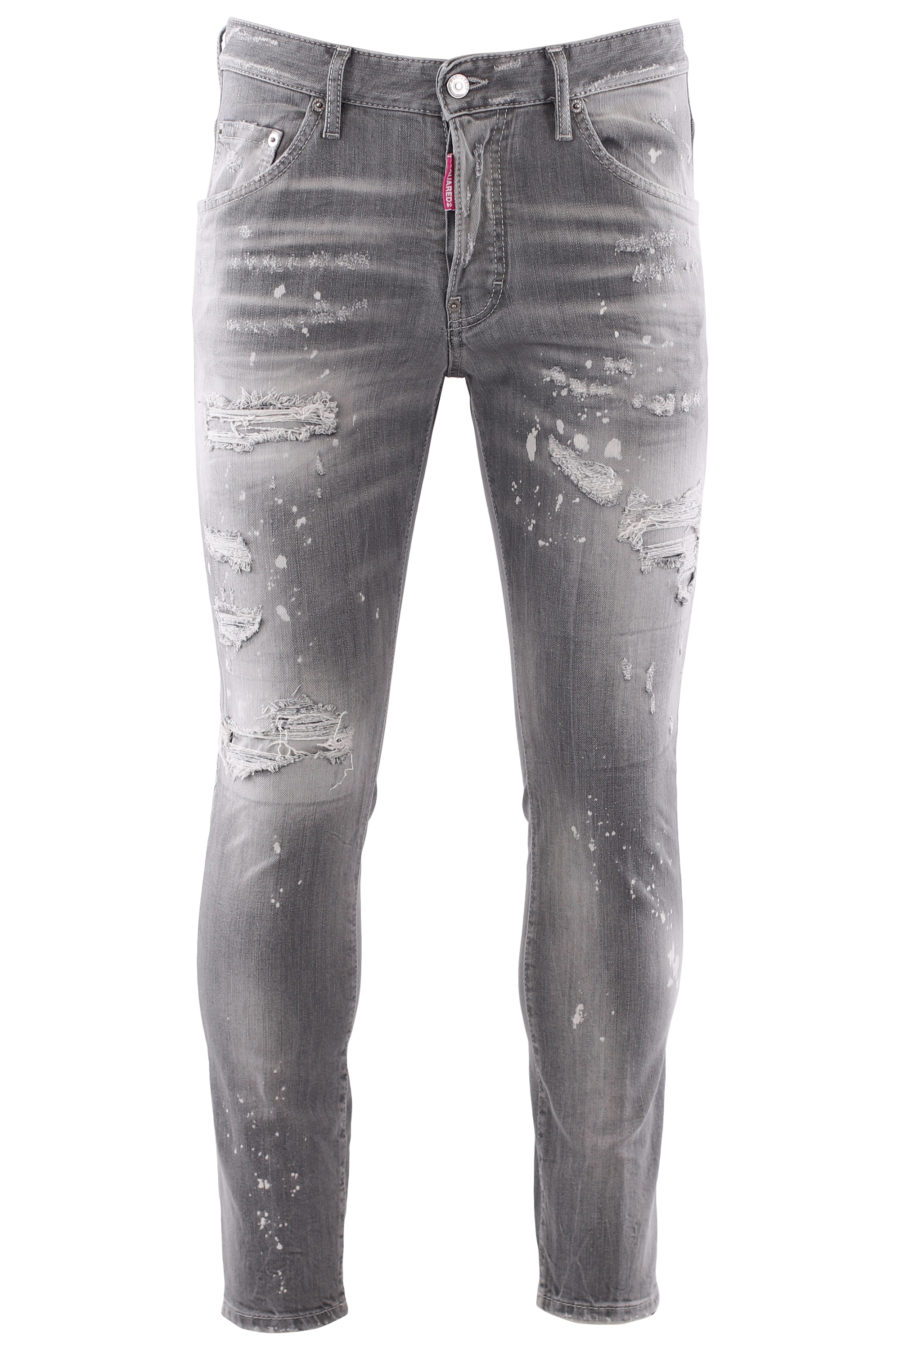 Jeans "skater jean" gris usé - IMG 6693